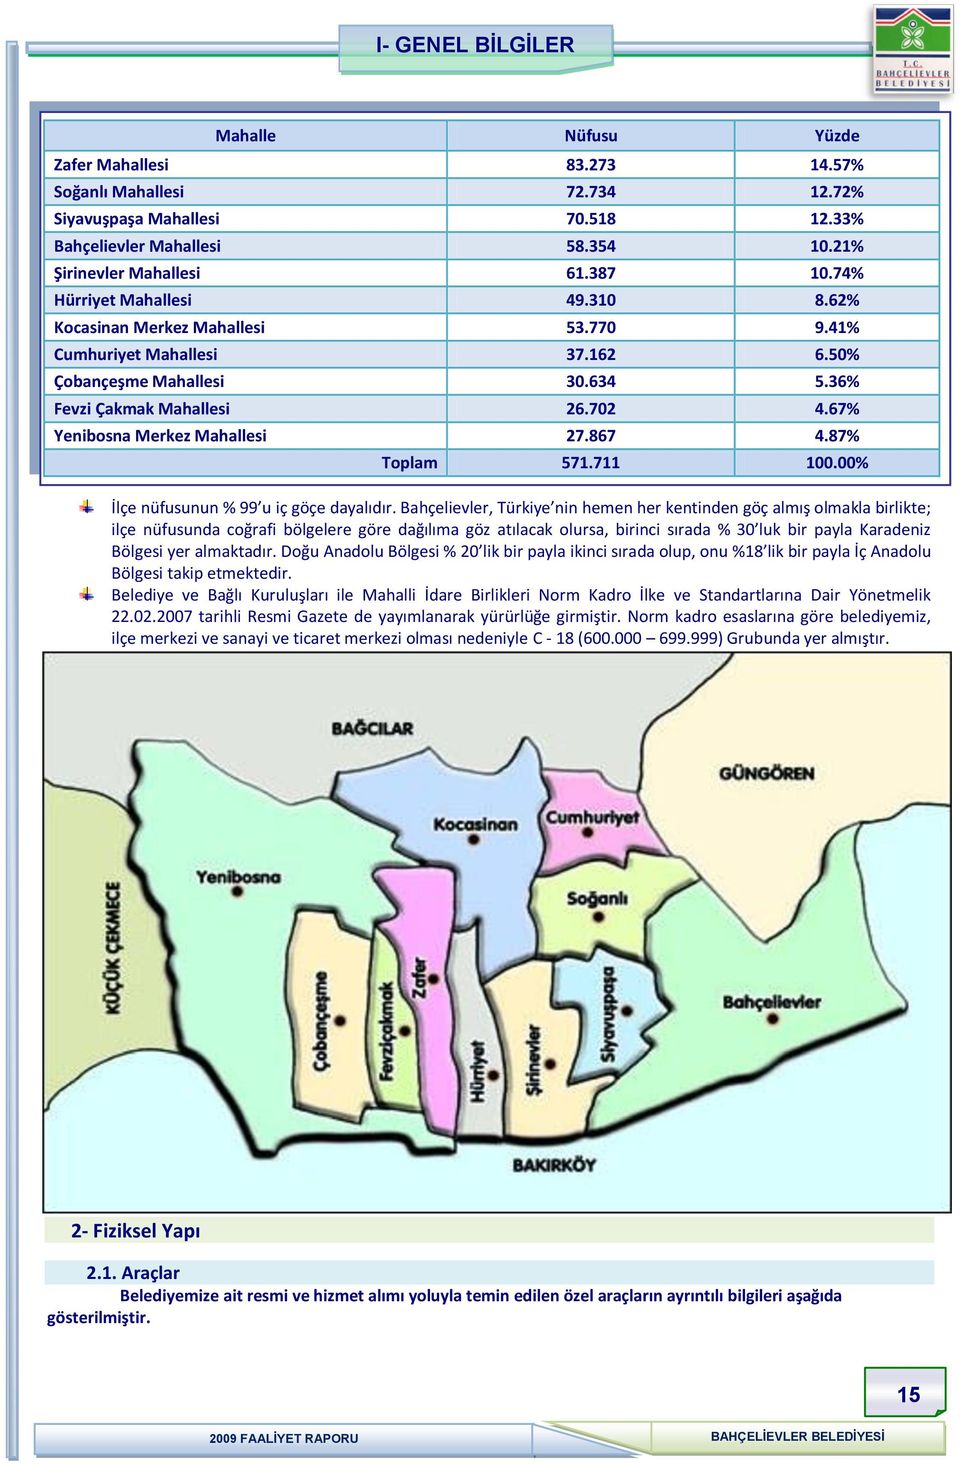 67% Yenibosna Merkez Mahallesi 27.867 4.87% Toplam 571.711 1.% İlçe nüfusunun % 99 u iç göçe dayalıdır.